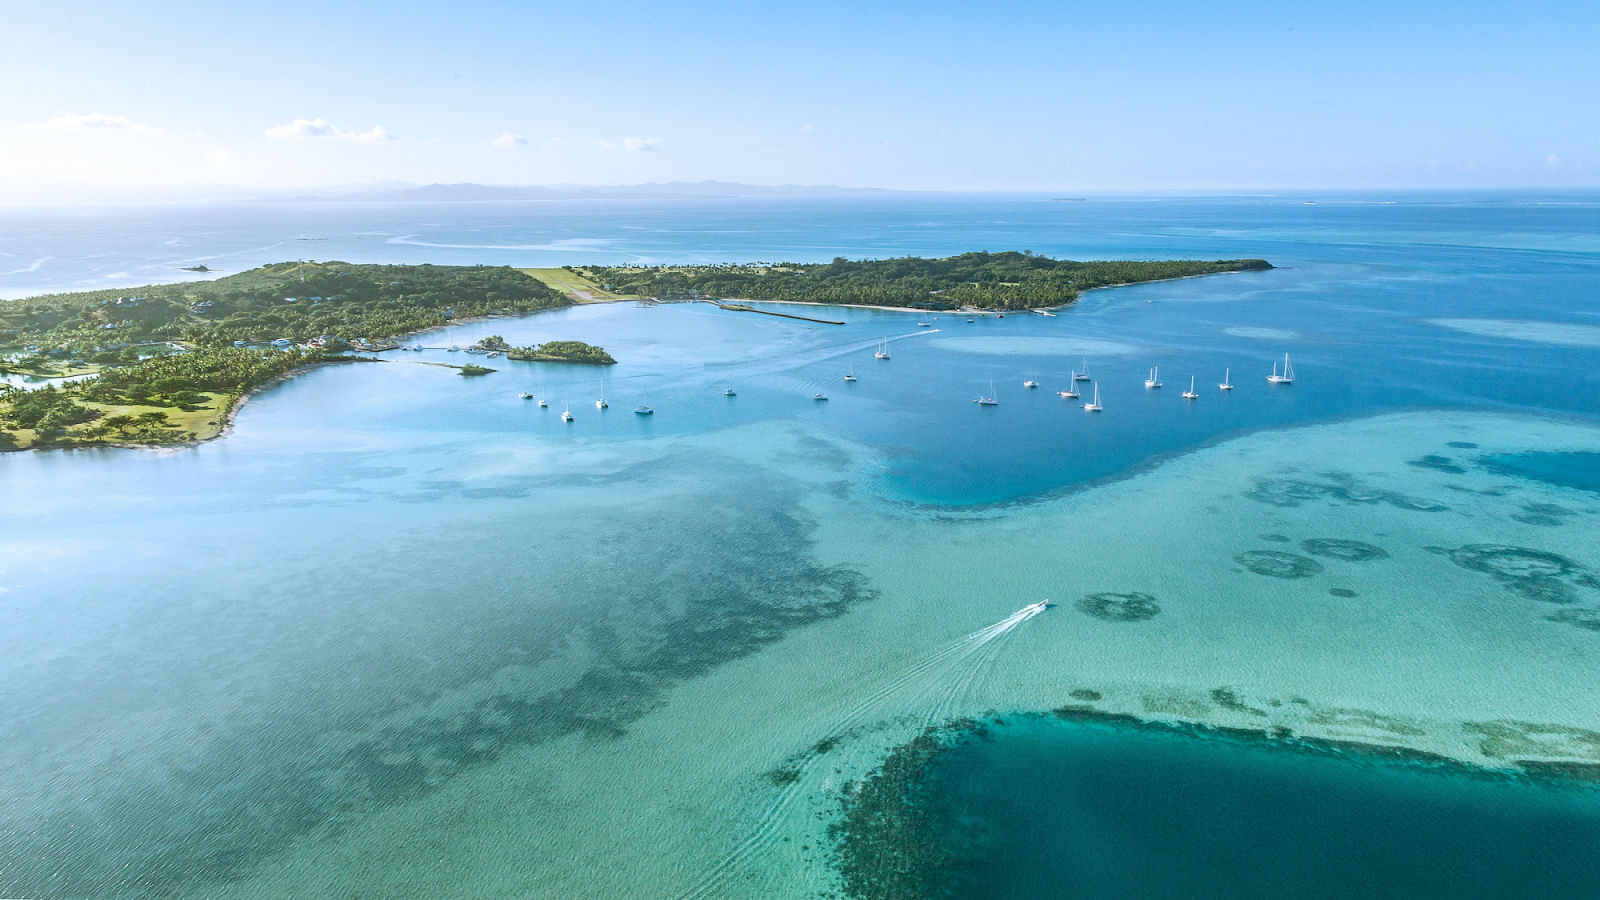 Hyr en båt i Fiji